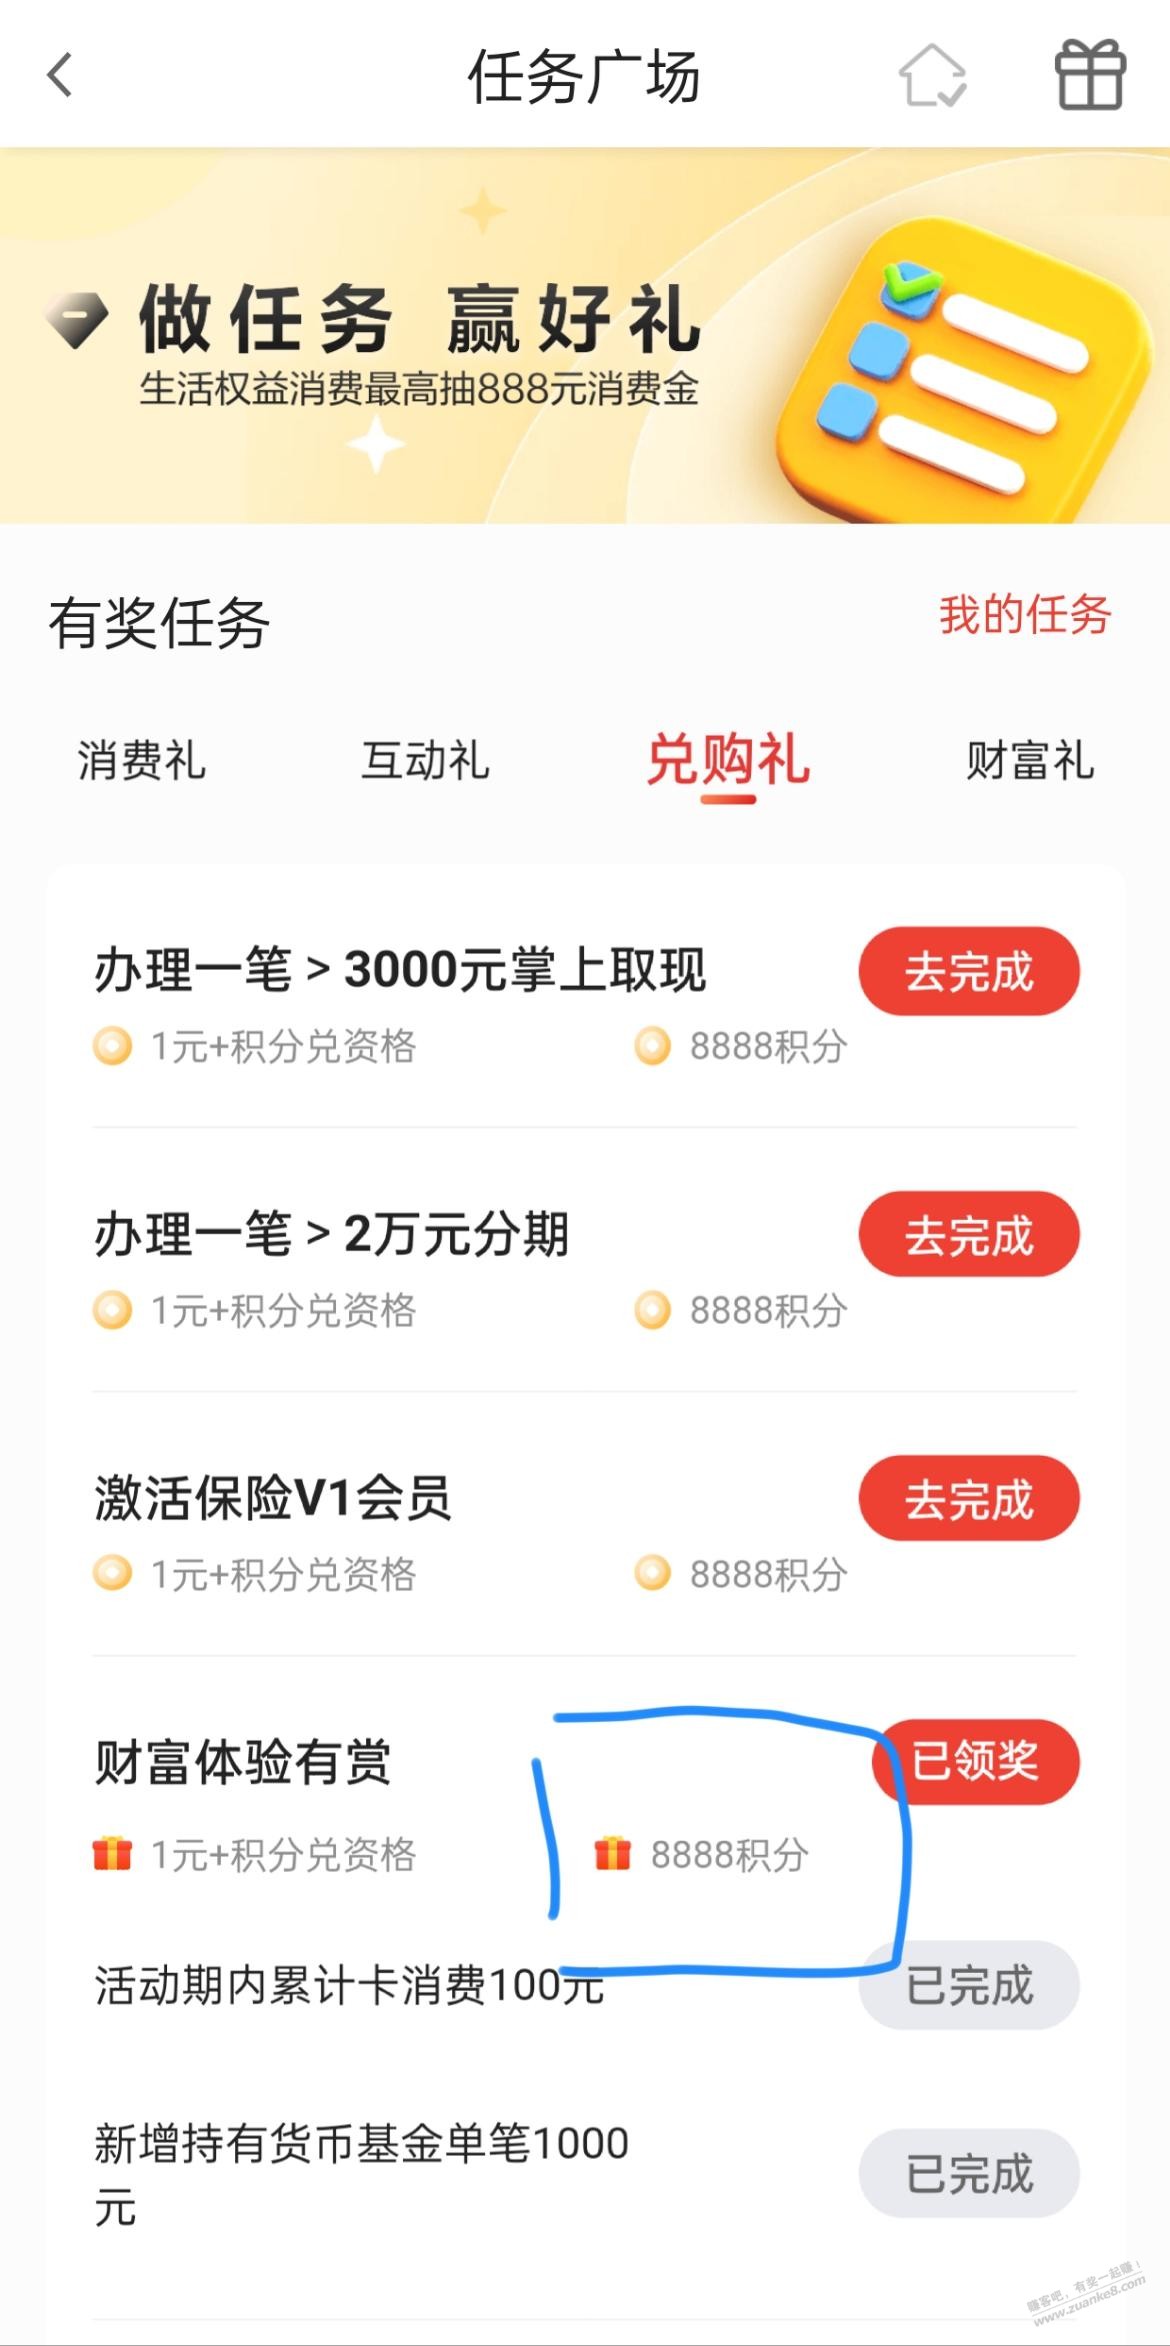 发现精彩app 任务广场 8888积分-惠小助(52huixz.com)